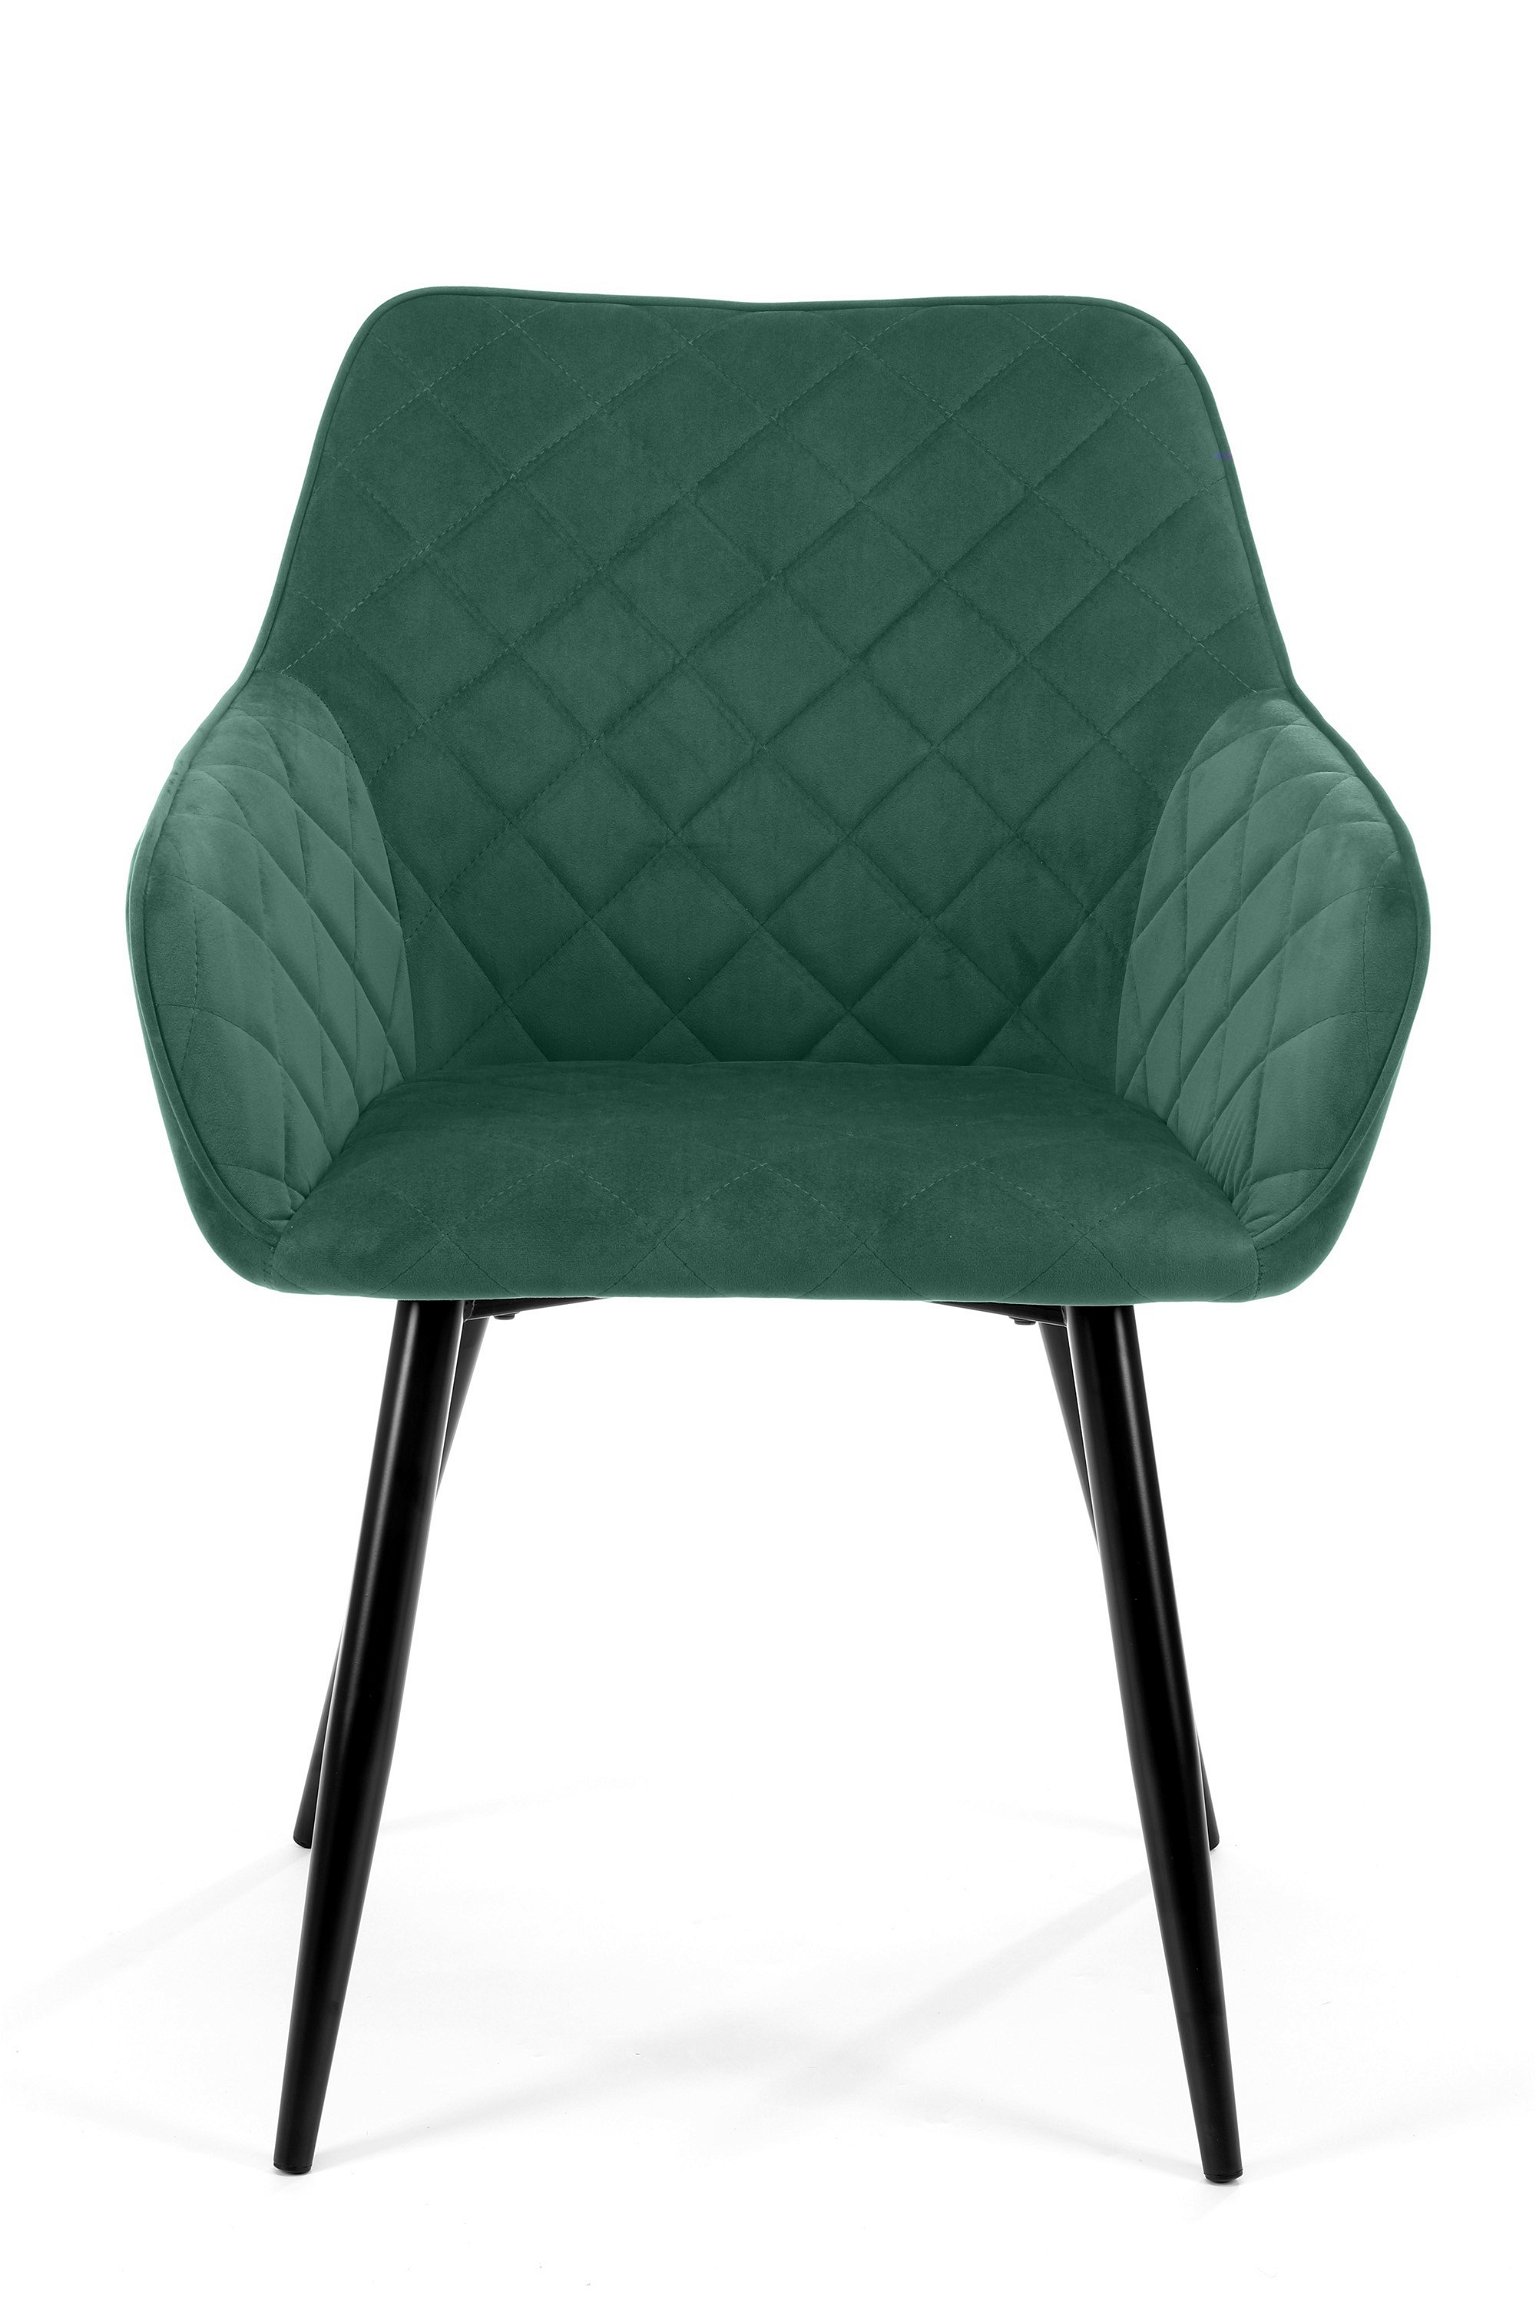 2-jų kėdžių komplektas SJ.082, žalia - 6